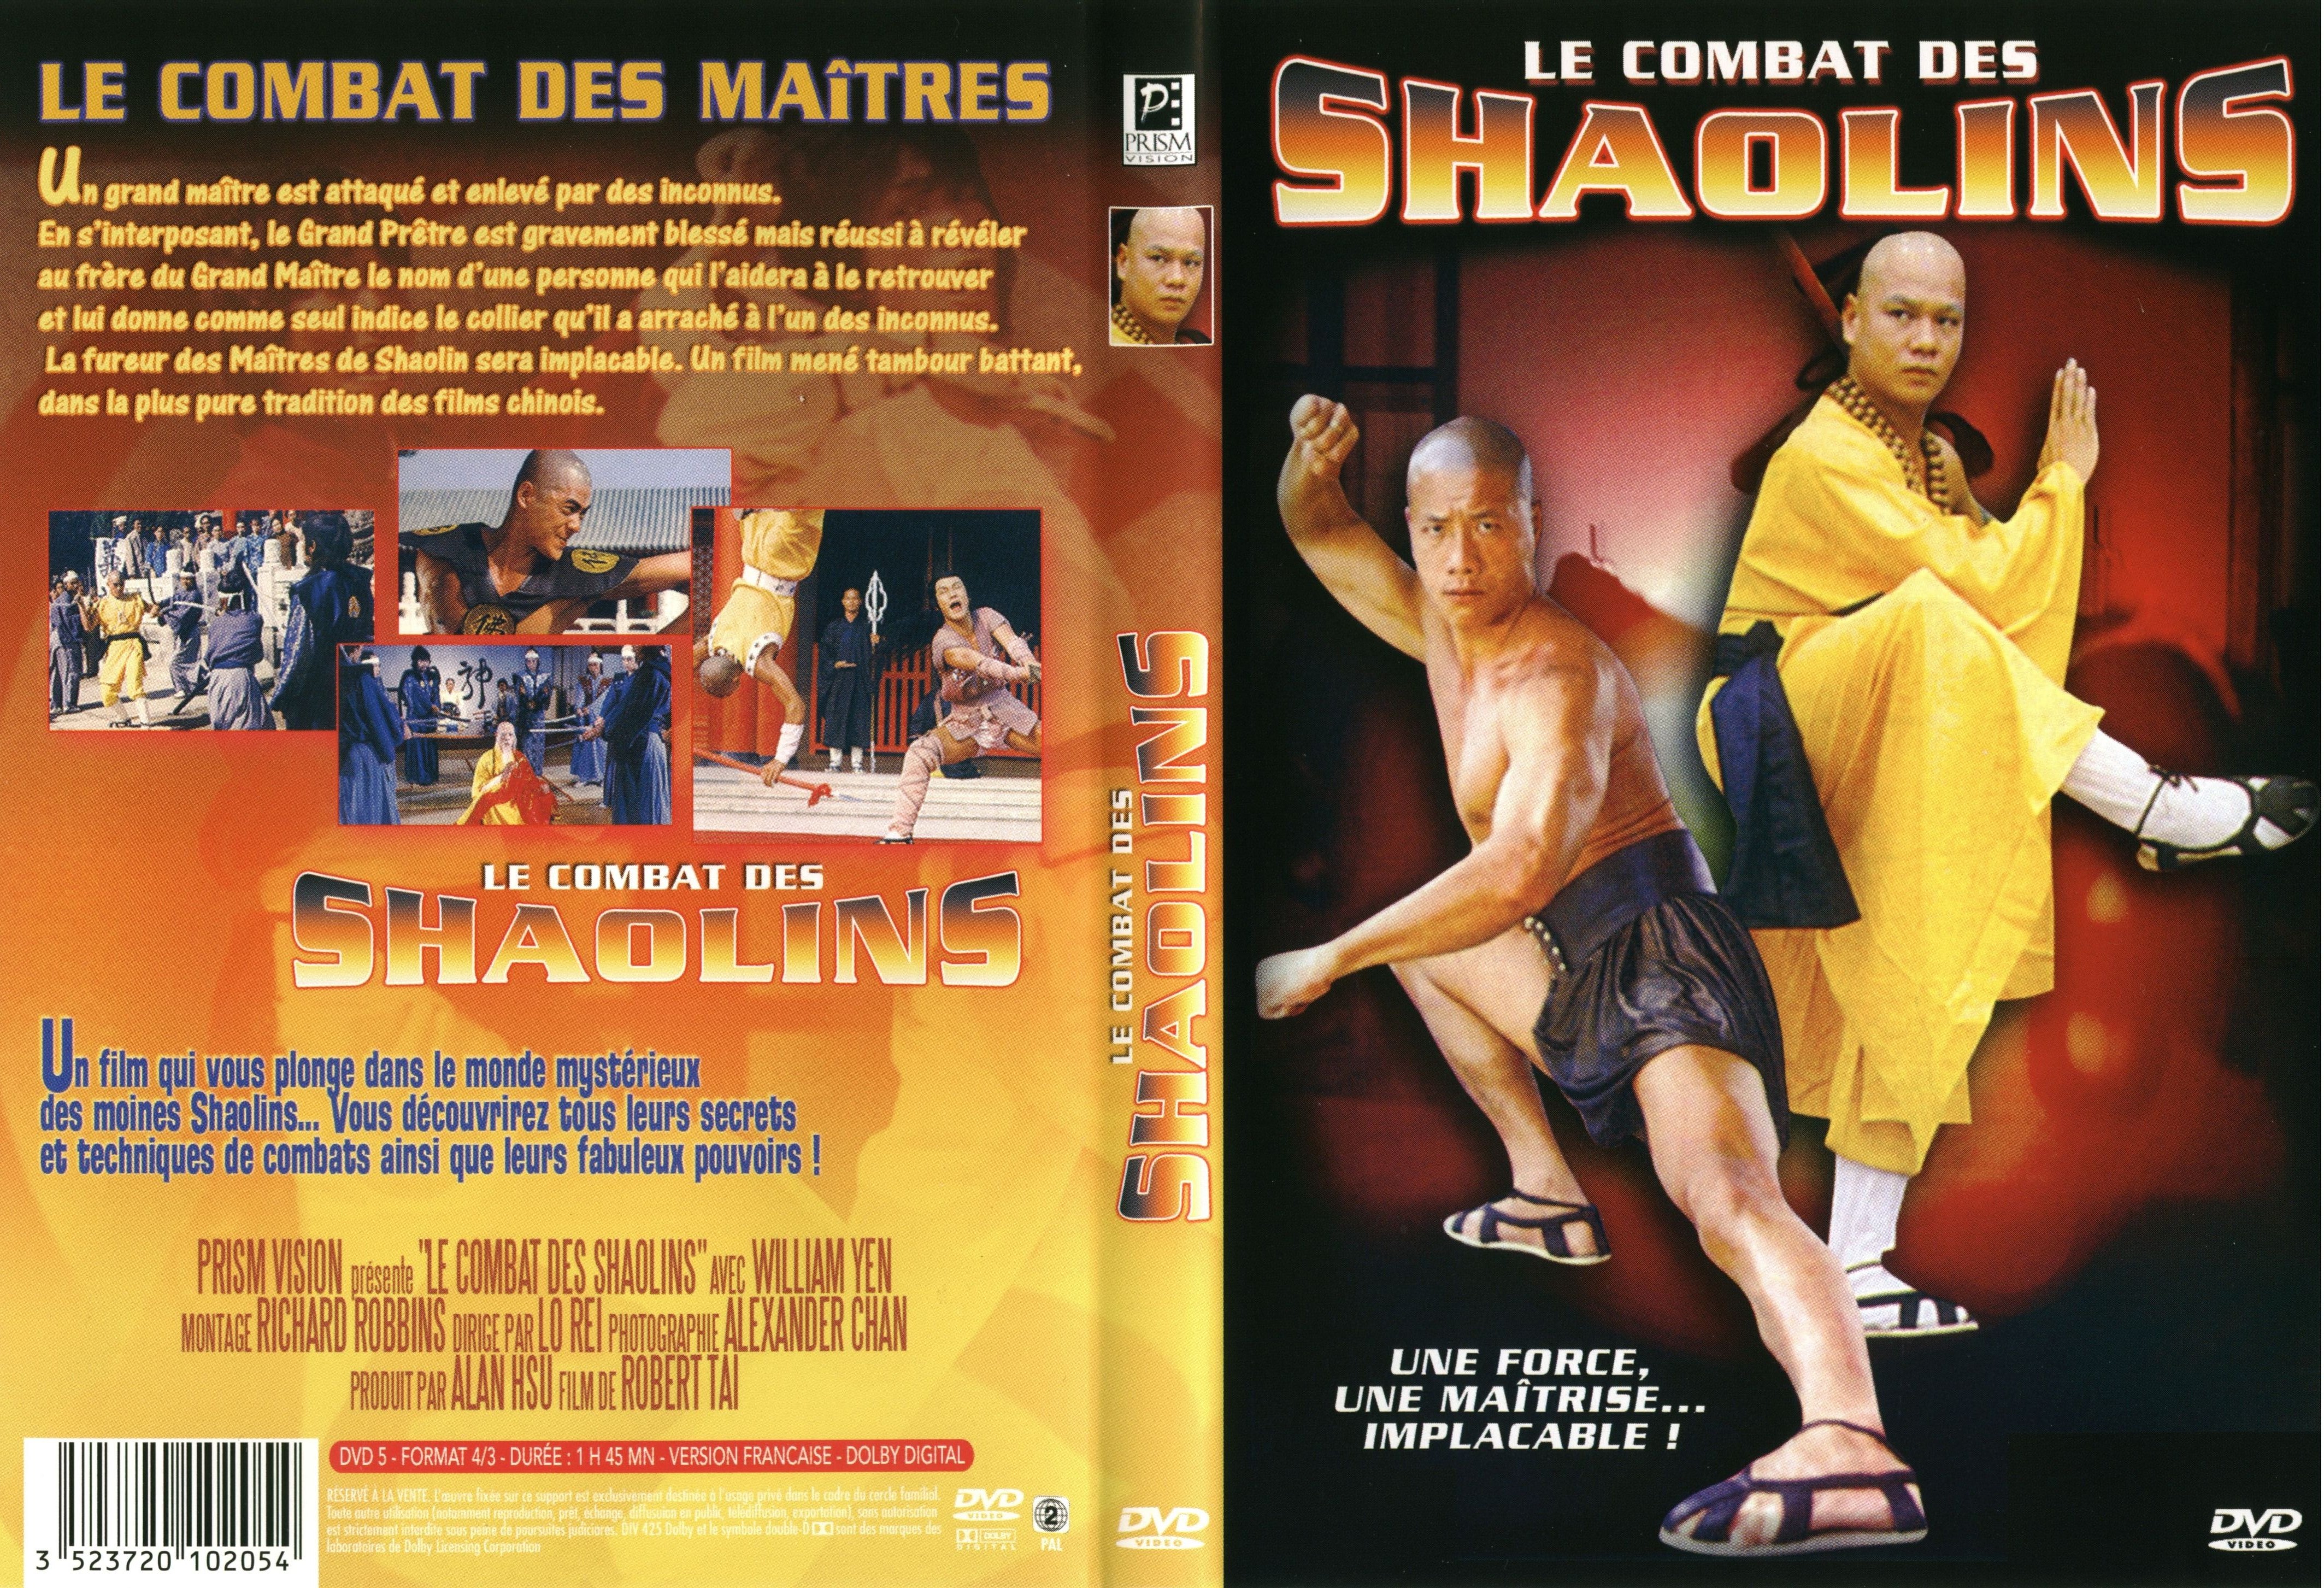 Jaquette DVD Le combat des shaolins